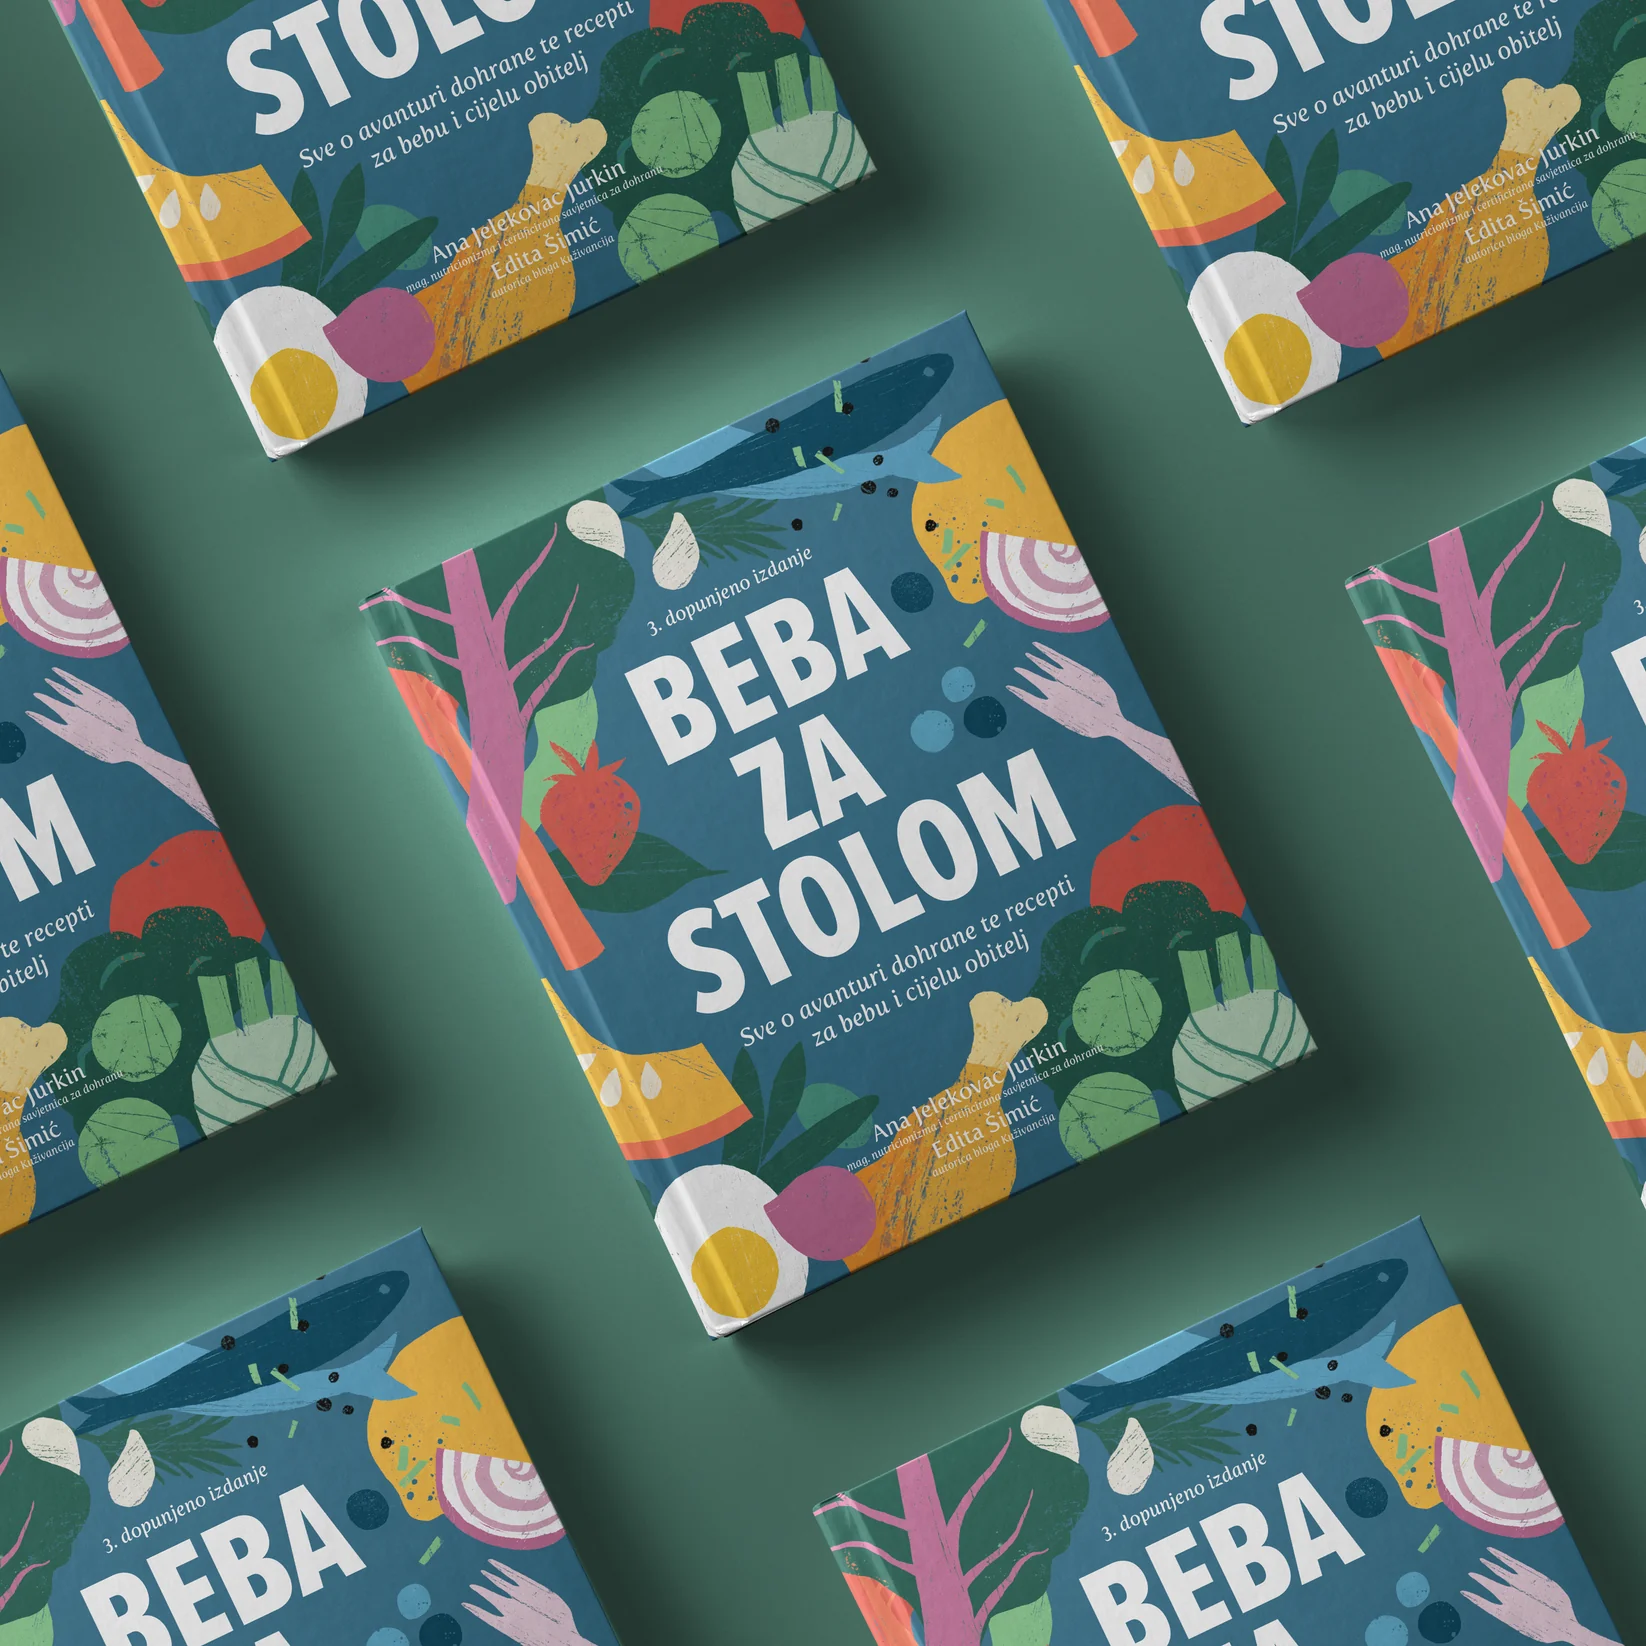 Novo izdanje najpoželjnije hrvatske knjige za dohranu beba opet je dostupno u prodaji